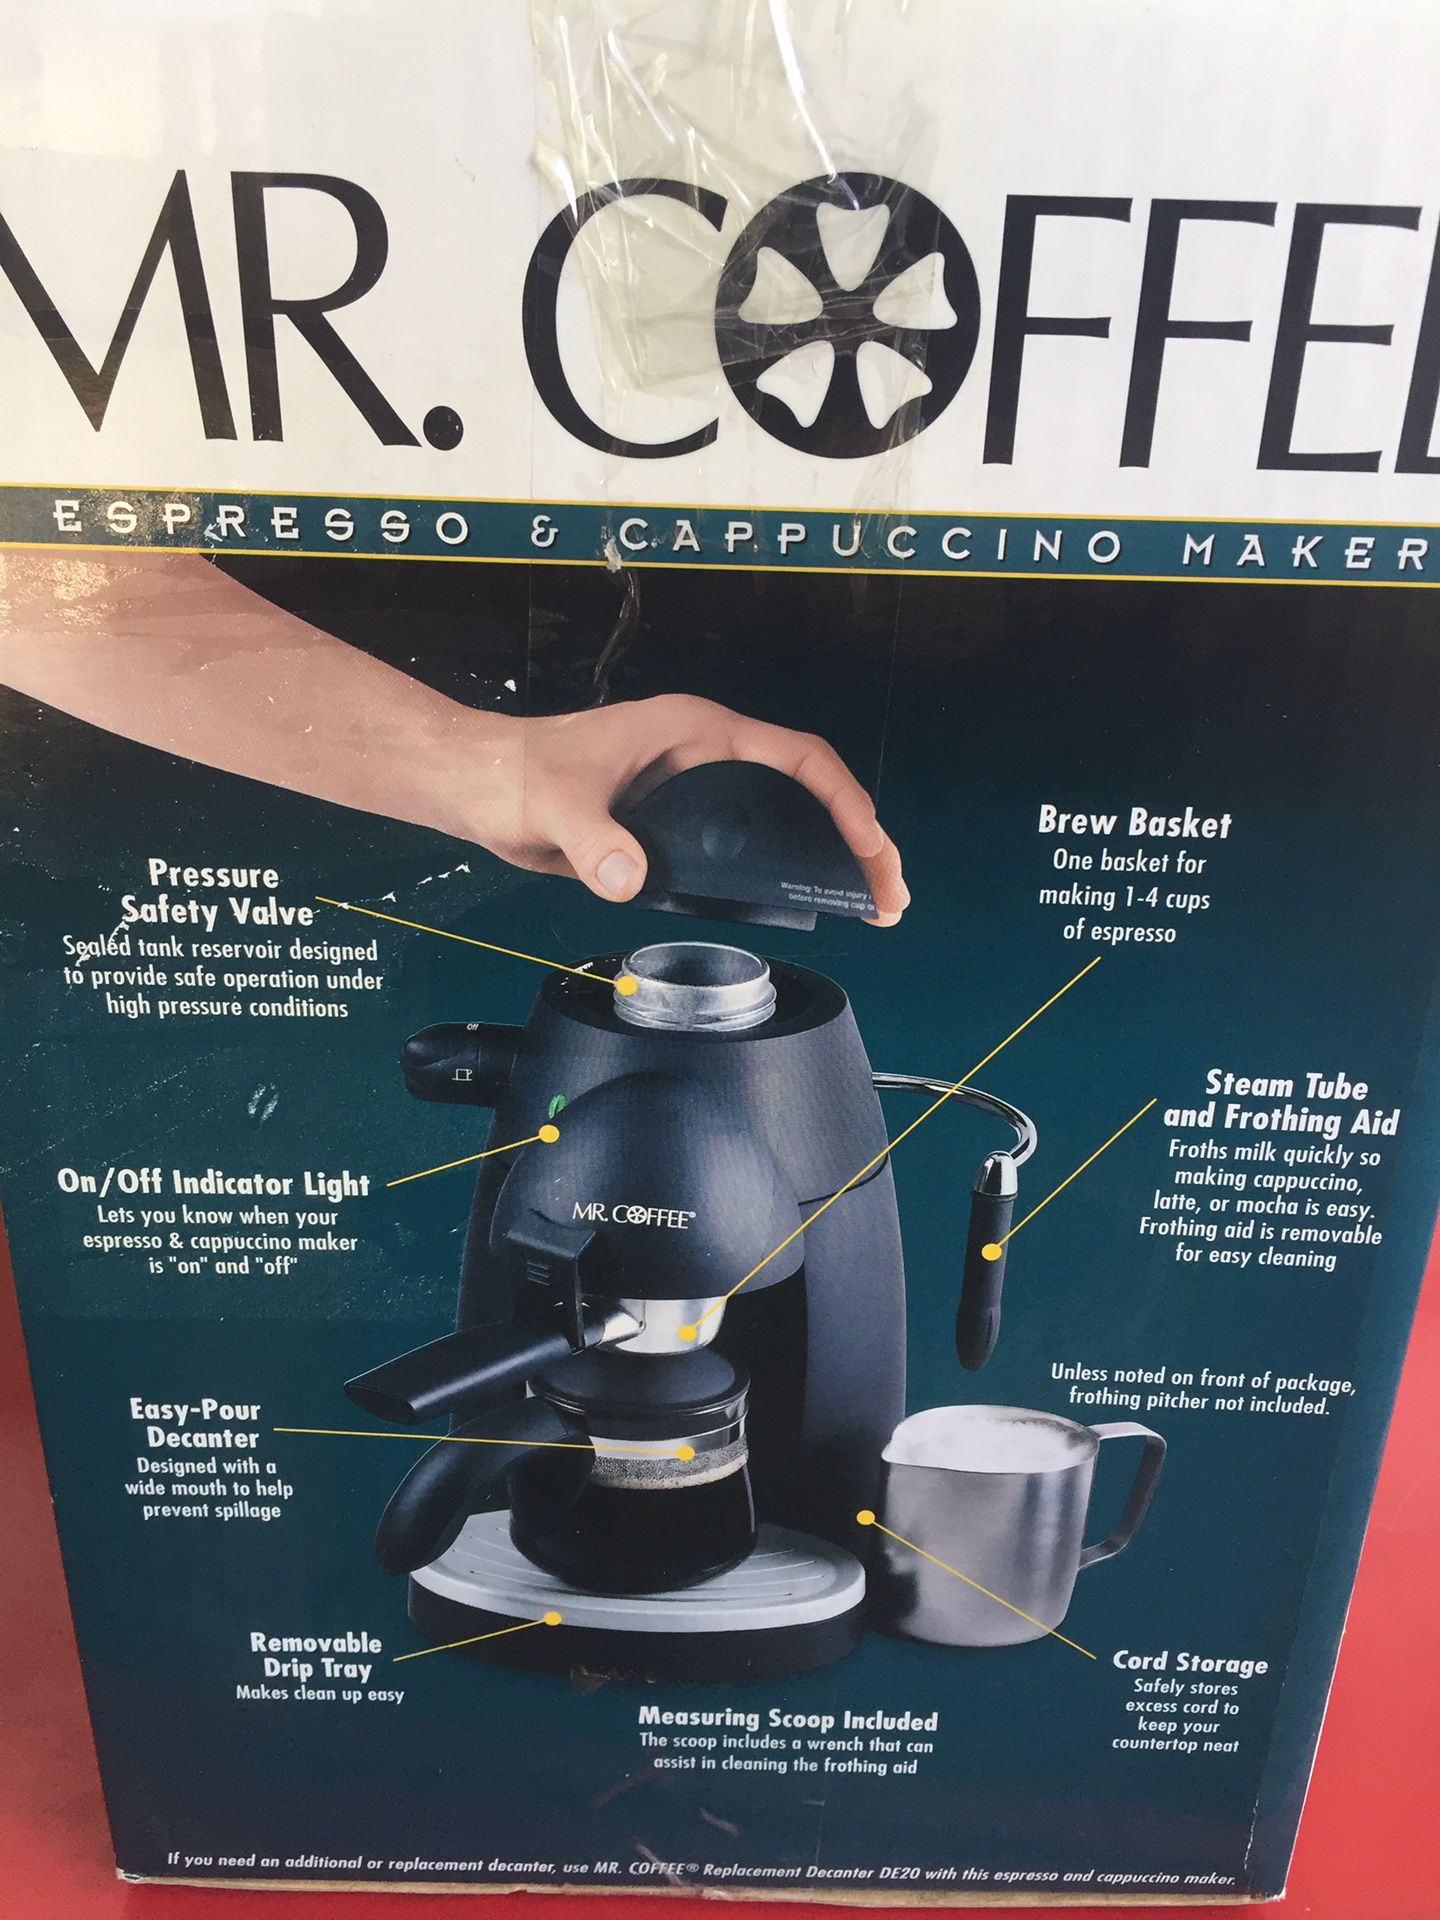 Mr. Coffee Espresso and Cappuccino maker